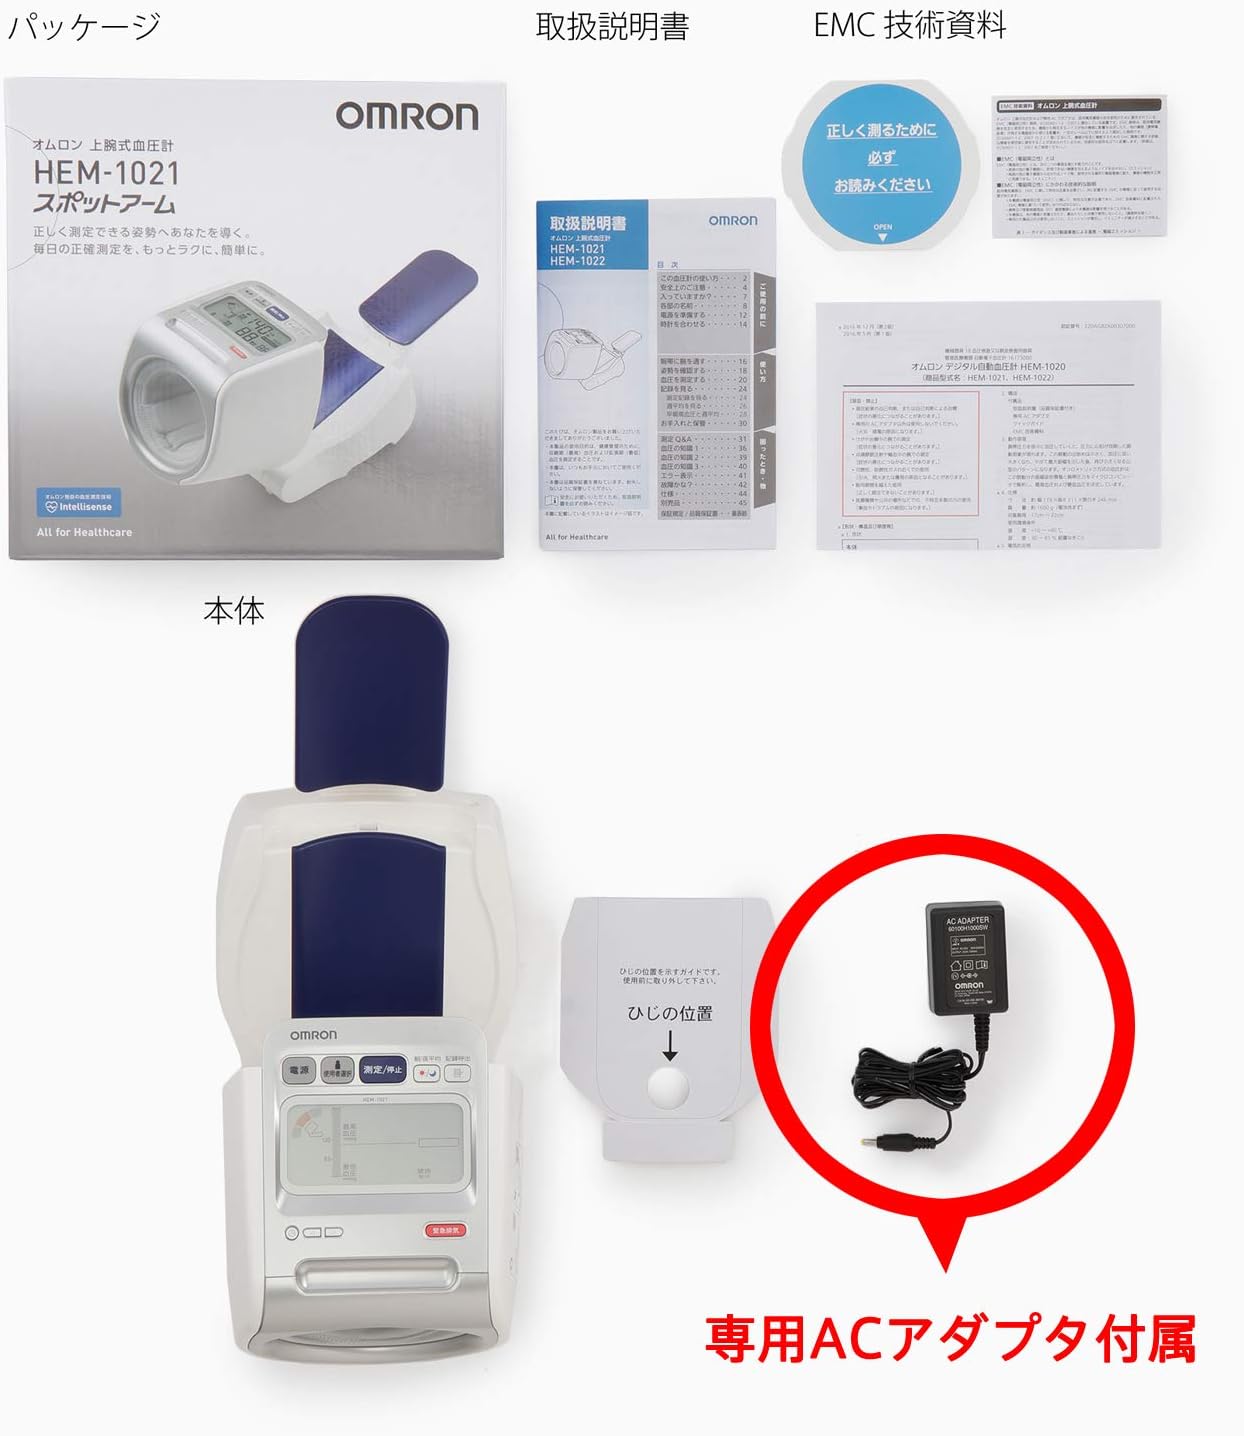 血圧計 上腕式 オムロン HEM-1021 スポットアーム デジタル自動血圧計 